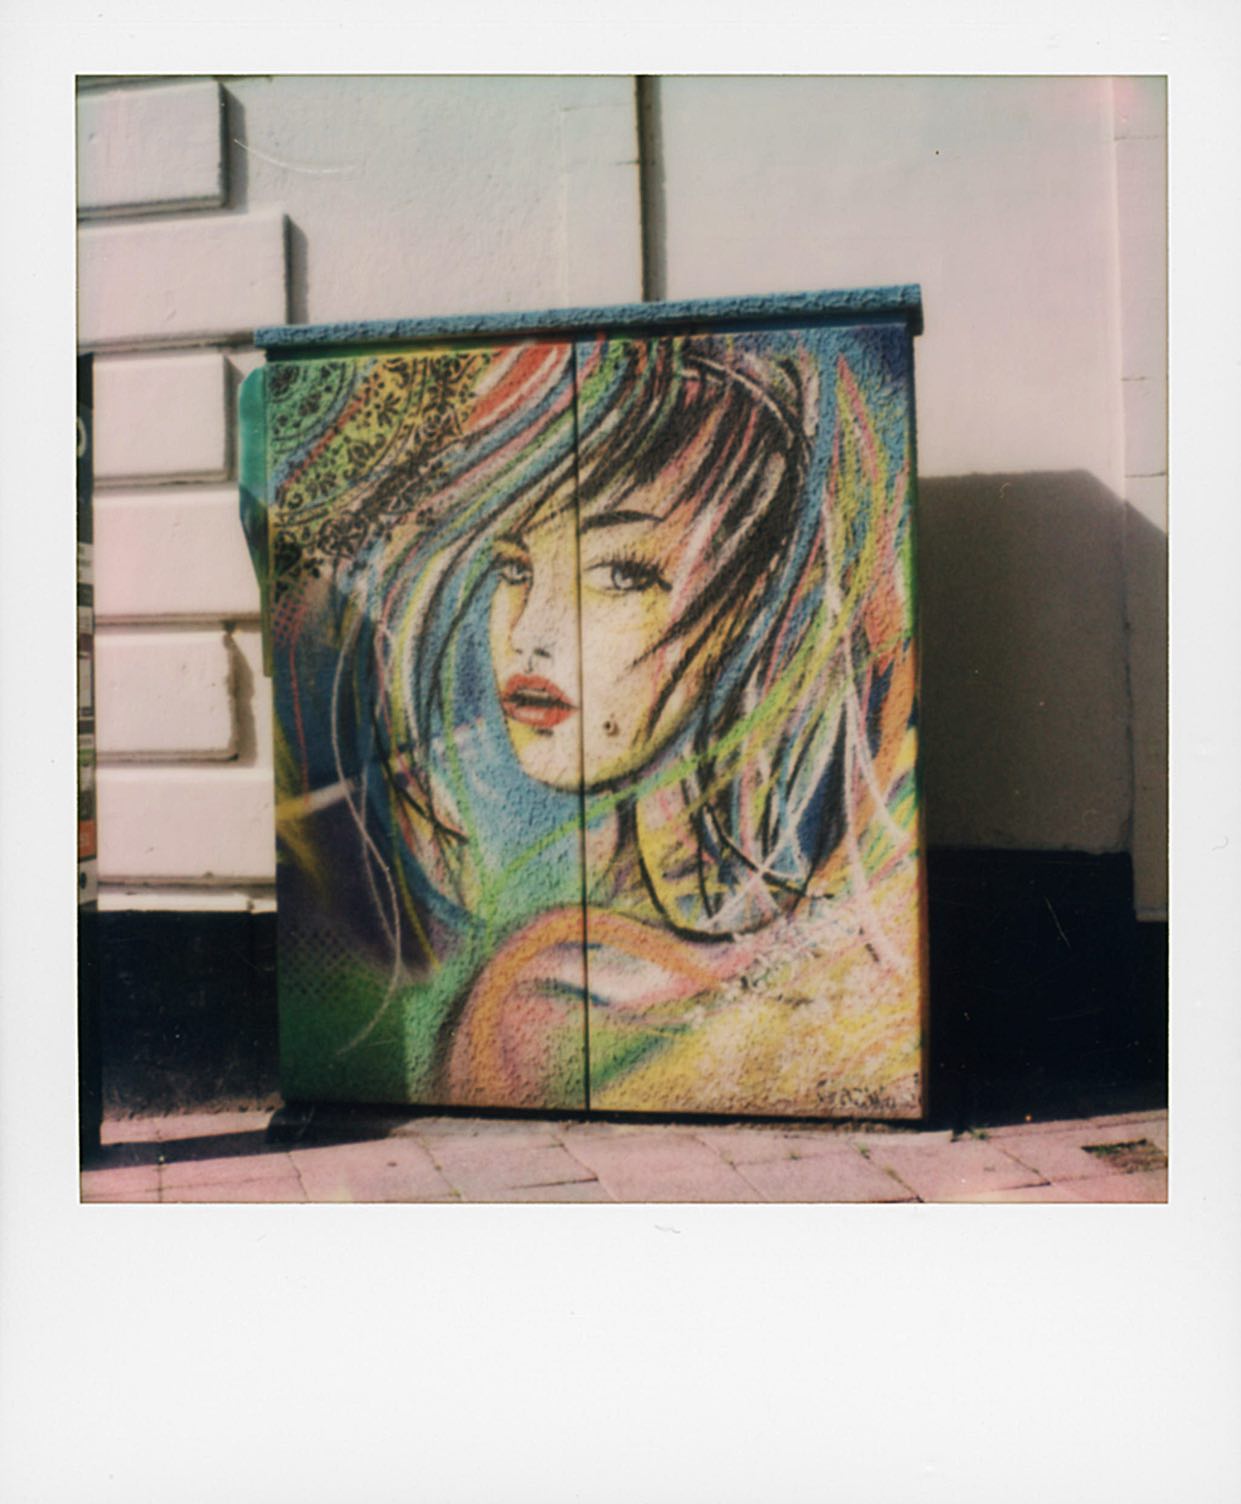 Streetart Boulogne-sur-Mer (artiste?)...
🔻
🔻
#streetart #graffiti #boulognesurmer #mypolaroidnow #polaroid #instantmagazine #polaroidoriginals @polaroid #polaroidoriginals_hk #polaroidoriginals_jp #impossibleproject #sx70 #color600 #instantphoto #analogphotography #instantpic #squarepic #polazine #polaroidoftheday #squaremag #thepolavoid #_instnt #instantfilmsociety #polaroidcommunity🎞 #polazine #polaroid_asia